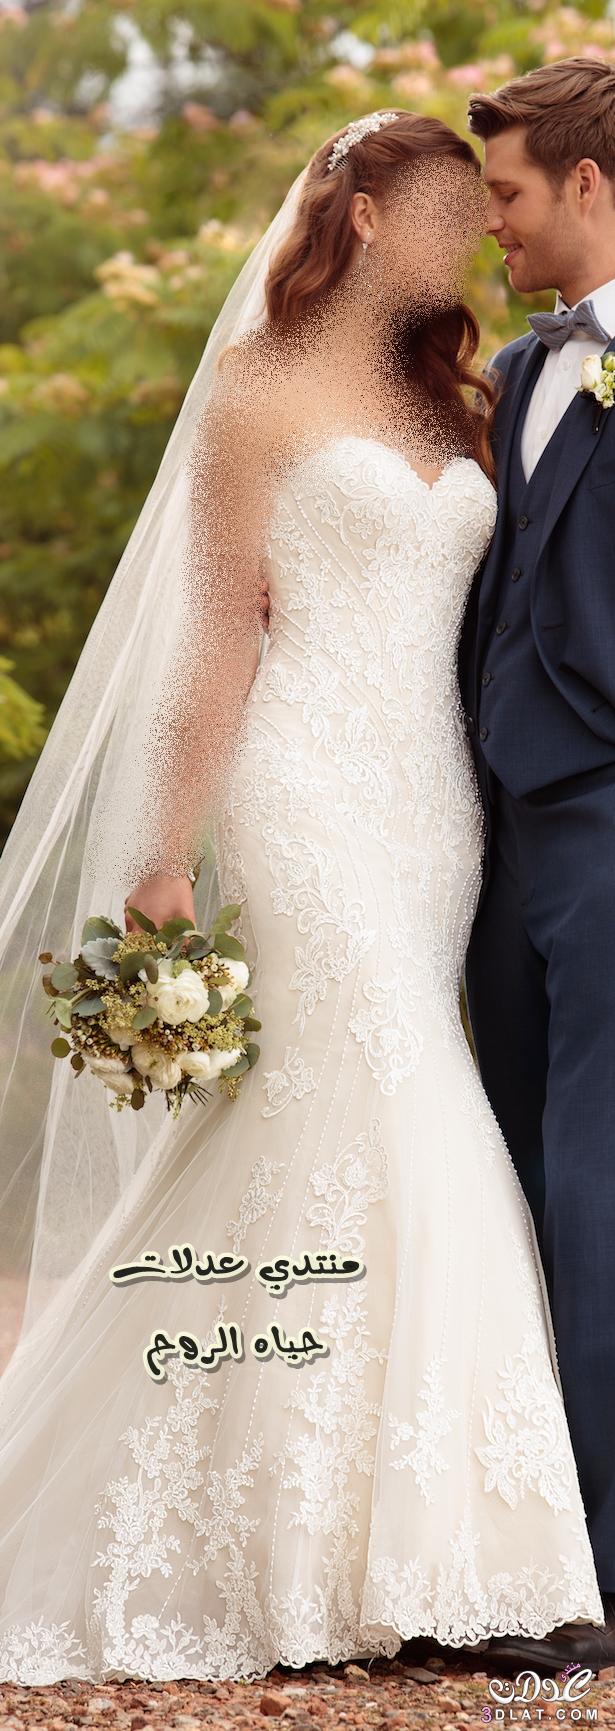 فساتين زفاف ناعمة ستتوجك في أفضل صورة , أفضل القصات الناعمة والرقيقة لفساتين الزفاف